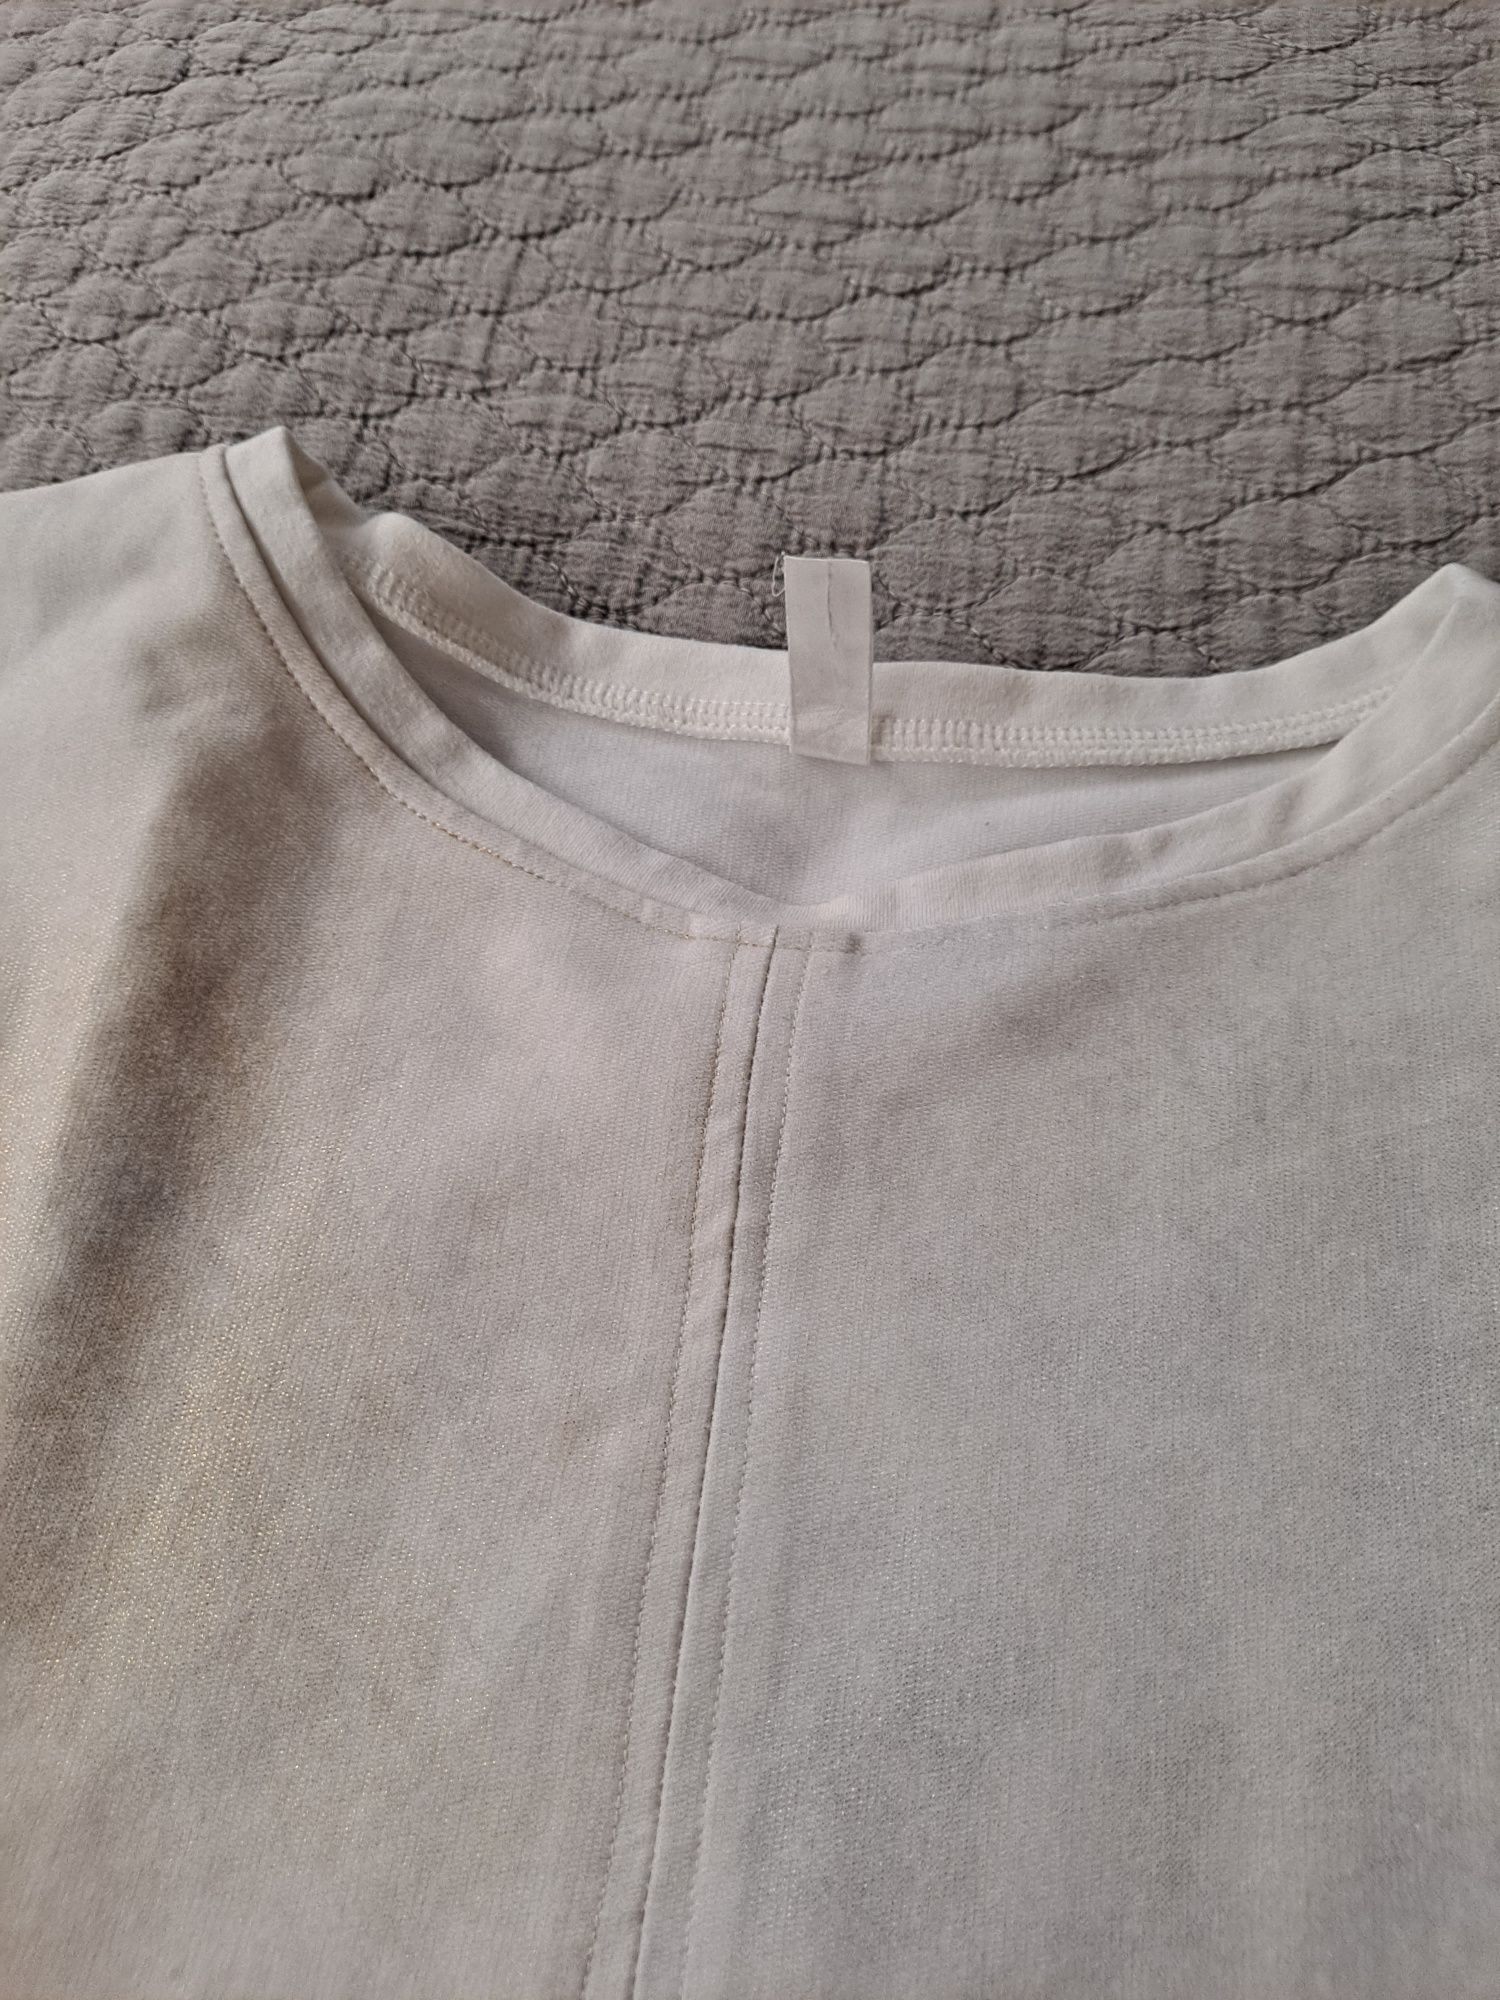 Bluza bawełniana z błyszczącym przodem S/M